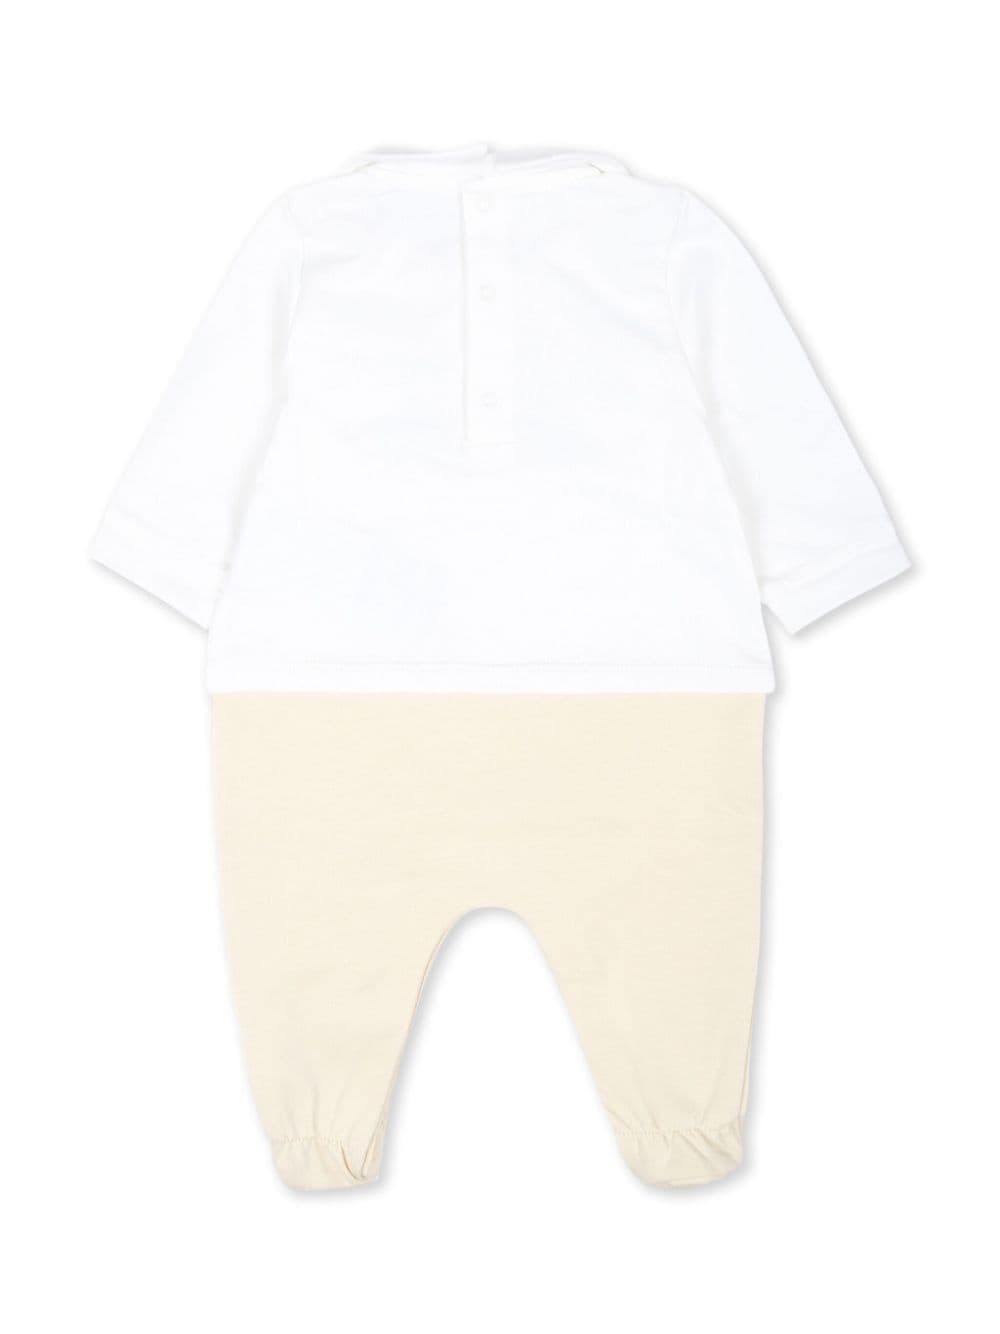 Baby onesie in white and beige cotton